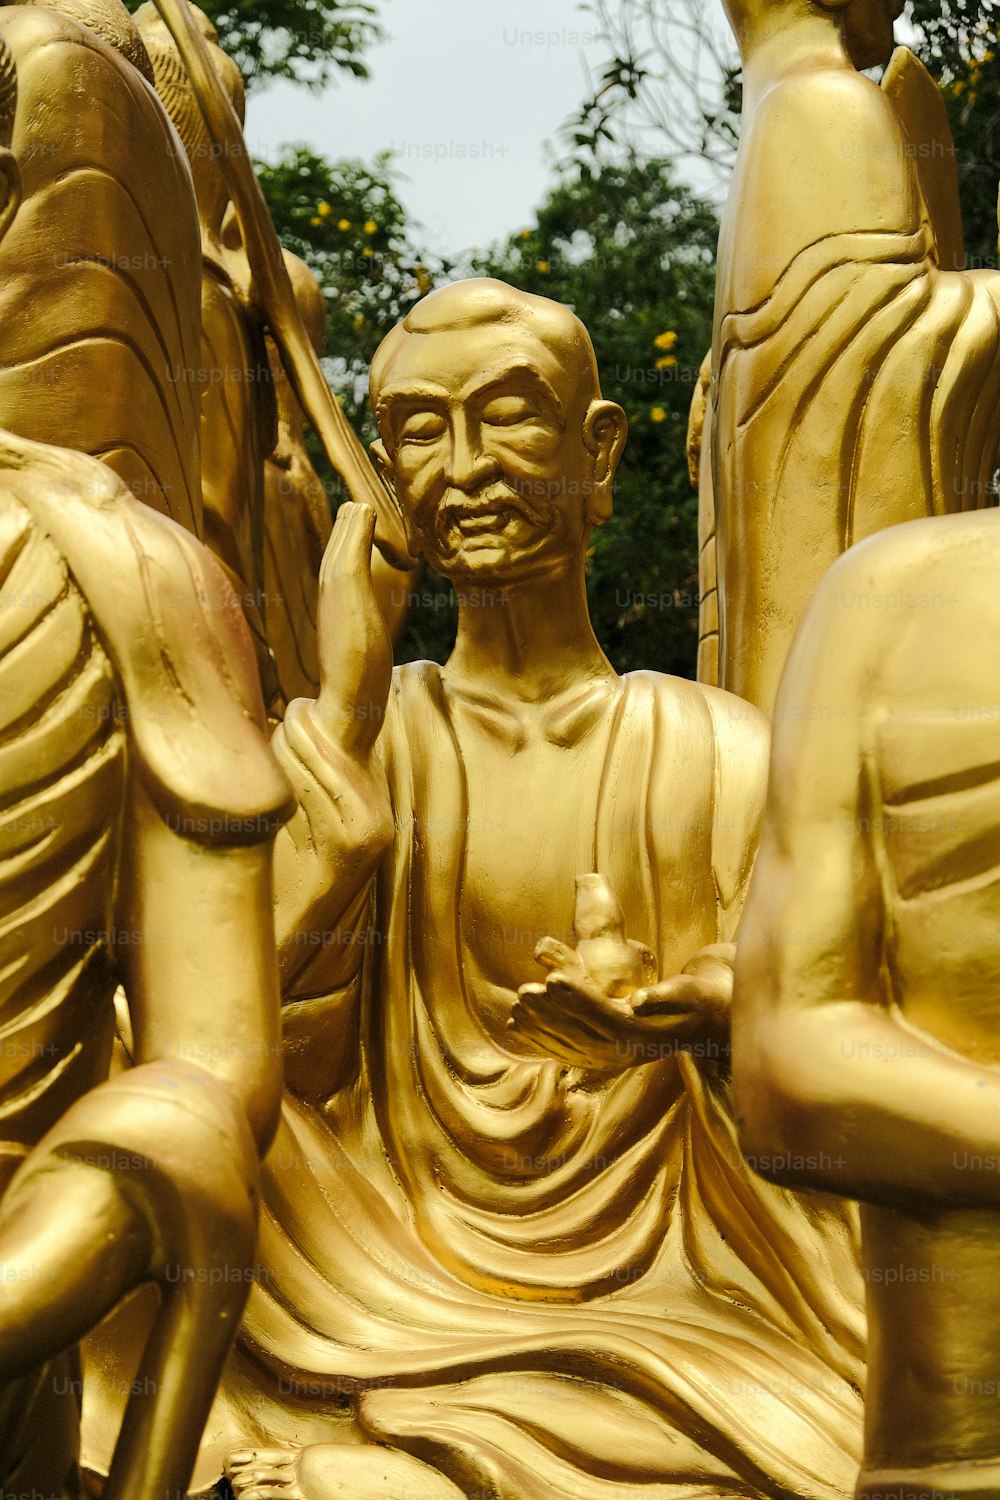 Eine goldene Buddhasstatue sitzt vor einem Baum